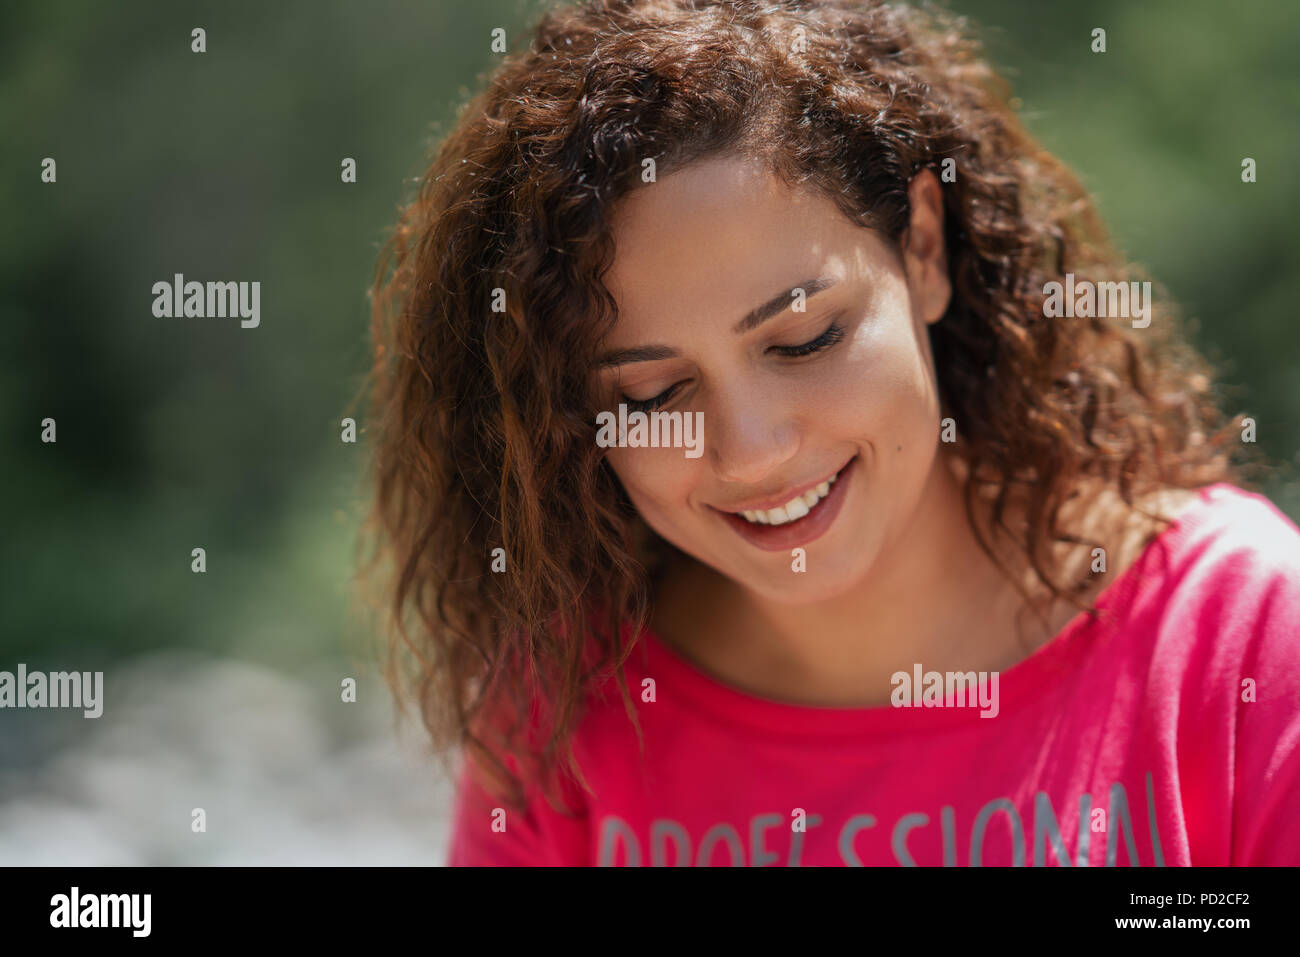 Close Up retrato de un alegre rizado joven sonriente al aire libre. Foto de stock